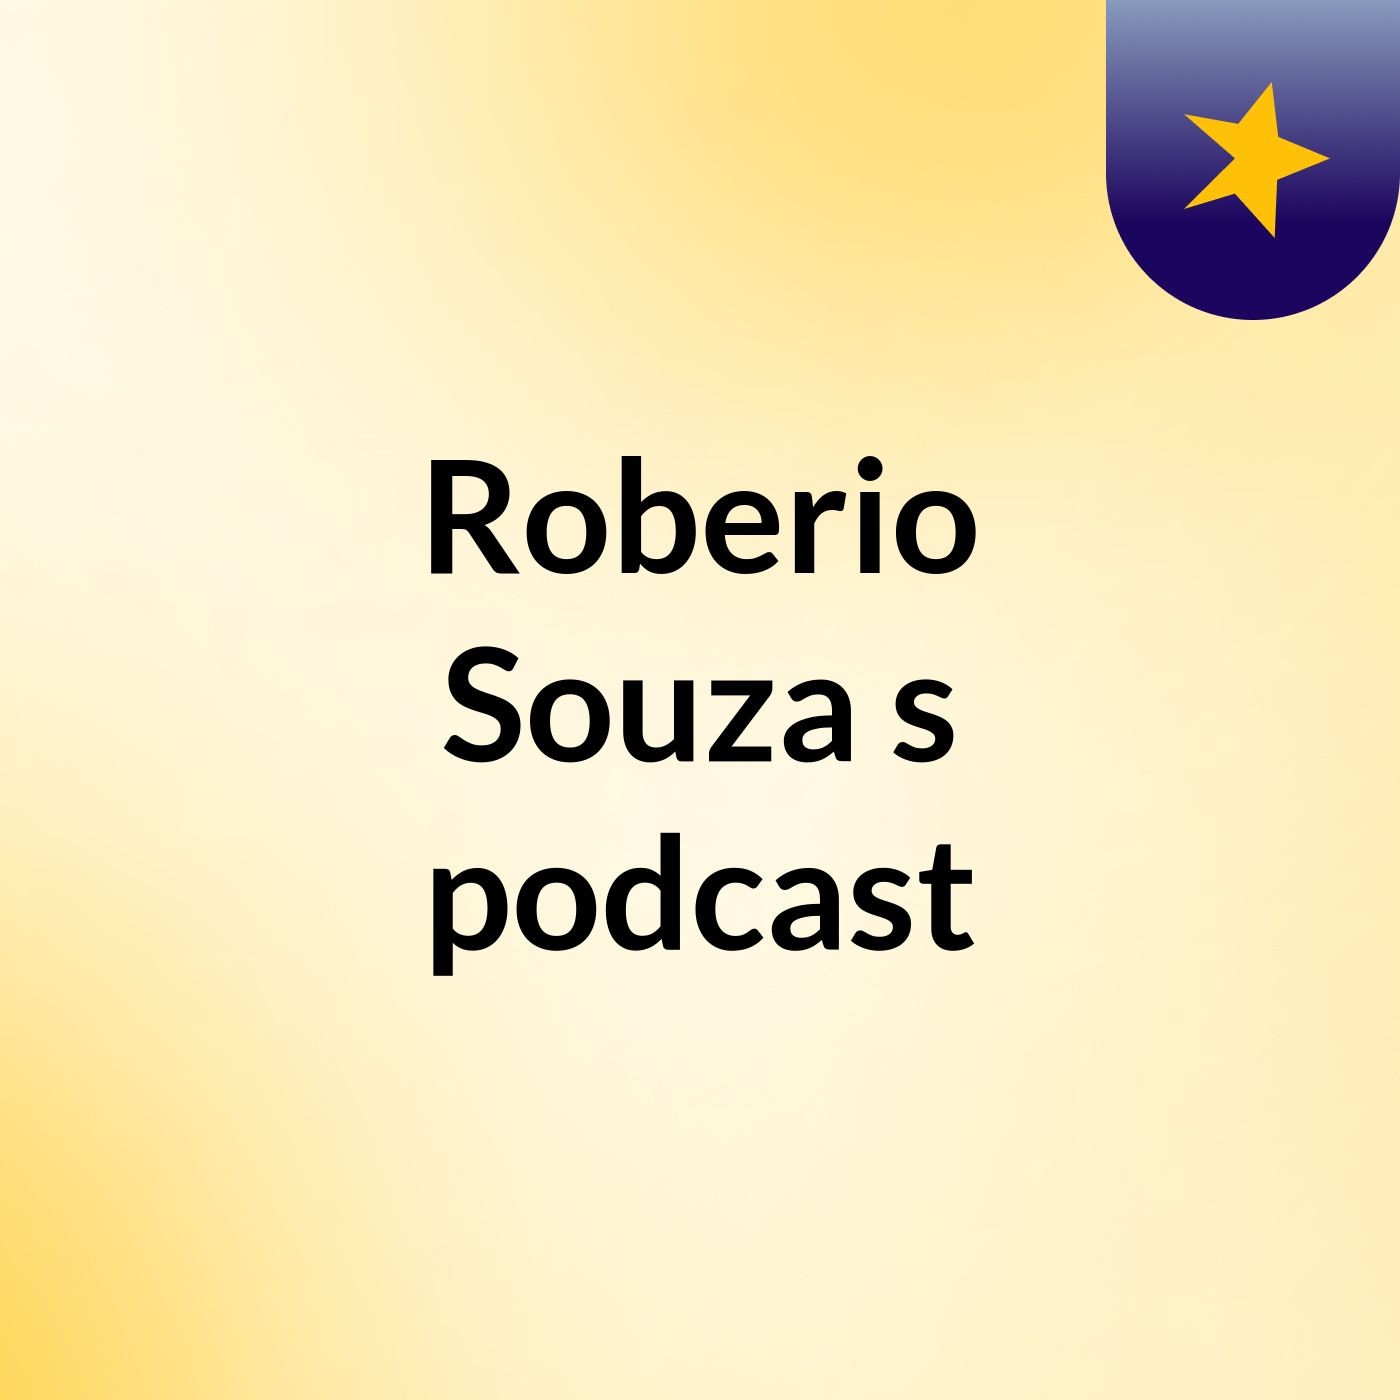 Roberio Souza's podcast